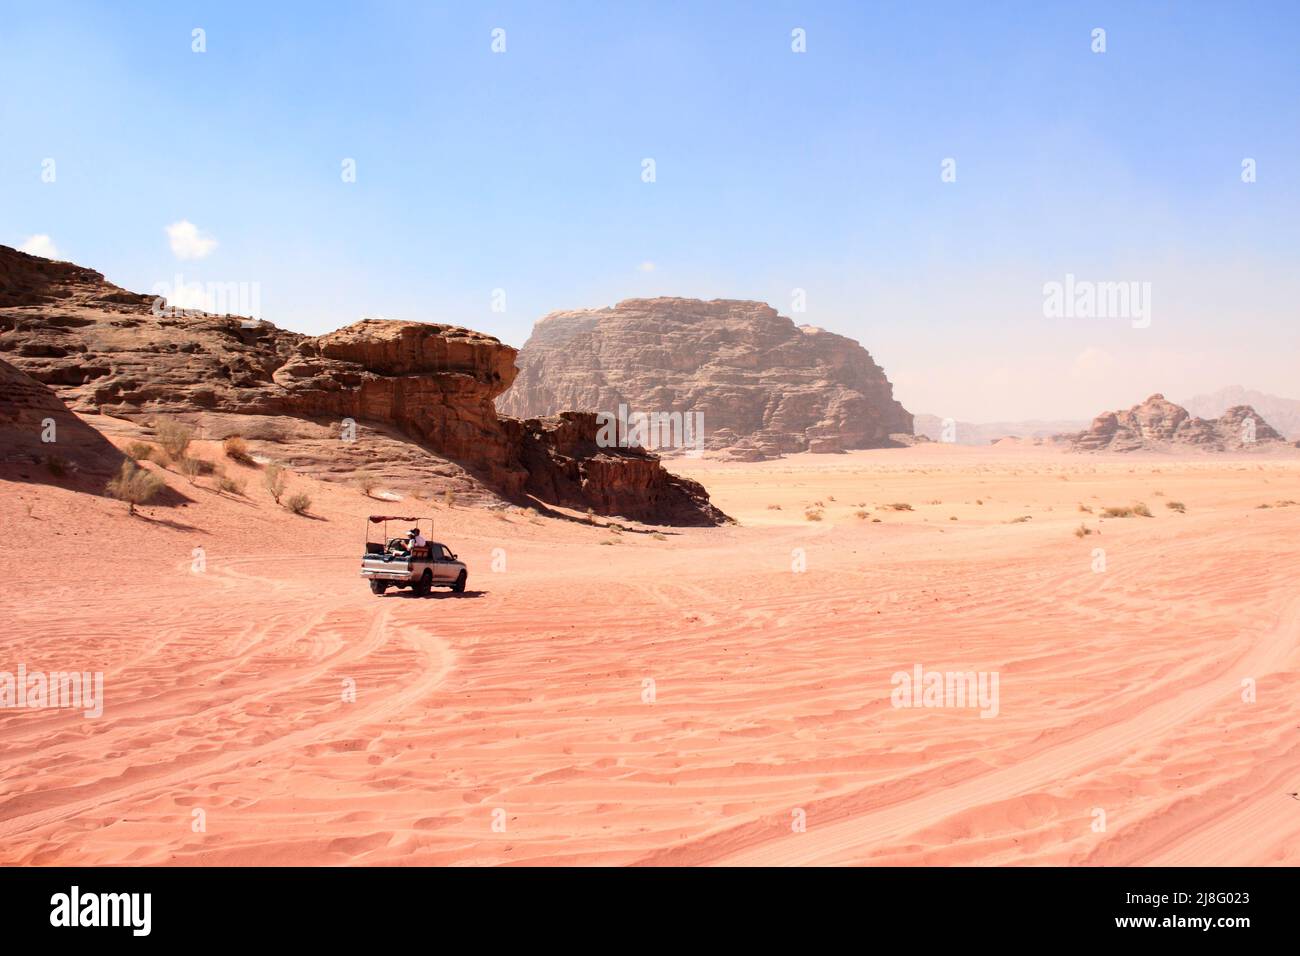 Safari en jeep dans le désert de Wadi Rum, en Jordanie. Les touristes en voiture se rendent sur le sable au milieu des magnifiques rochers tout-terrain. Paysage désertique avec sable rouge et m rocailleux Banque D'Images